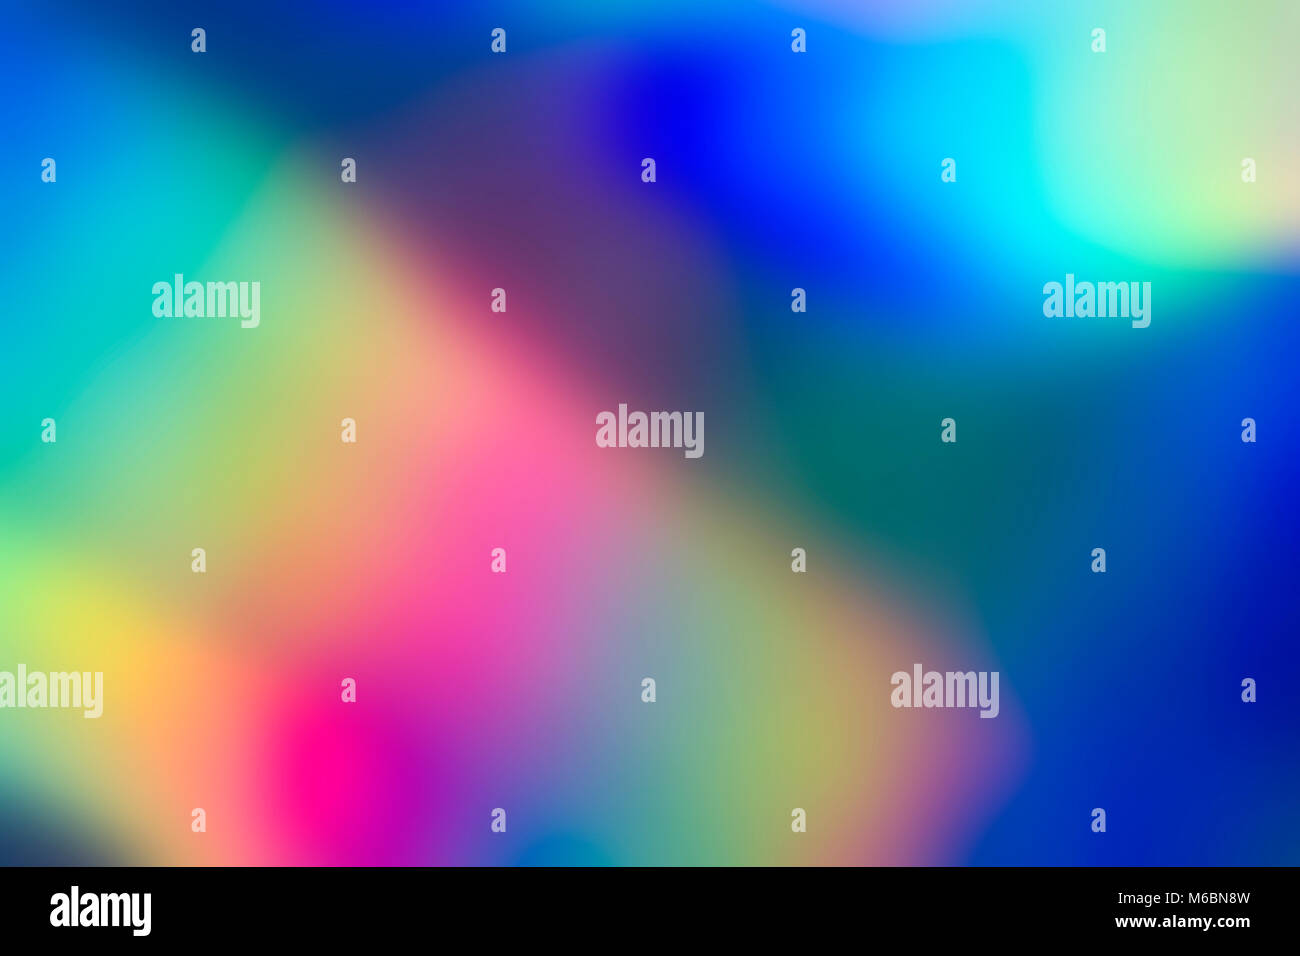 Spektrum abstrakt vaporwave holographische Hintergrund, trendigen bunten Kulisse in Pastelltönen Neon farbe. Für kreative Design Cover, CD, Plakat, Buch, Druckeni Stockfoto